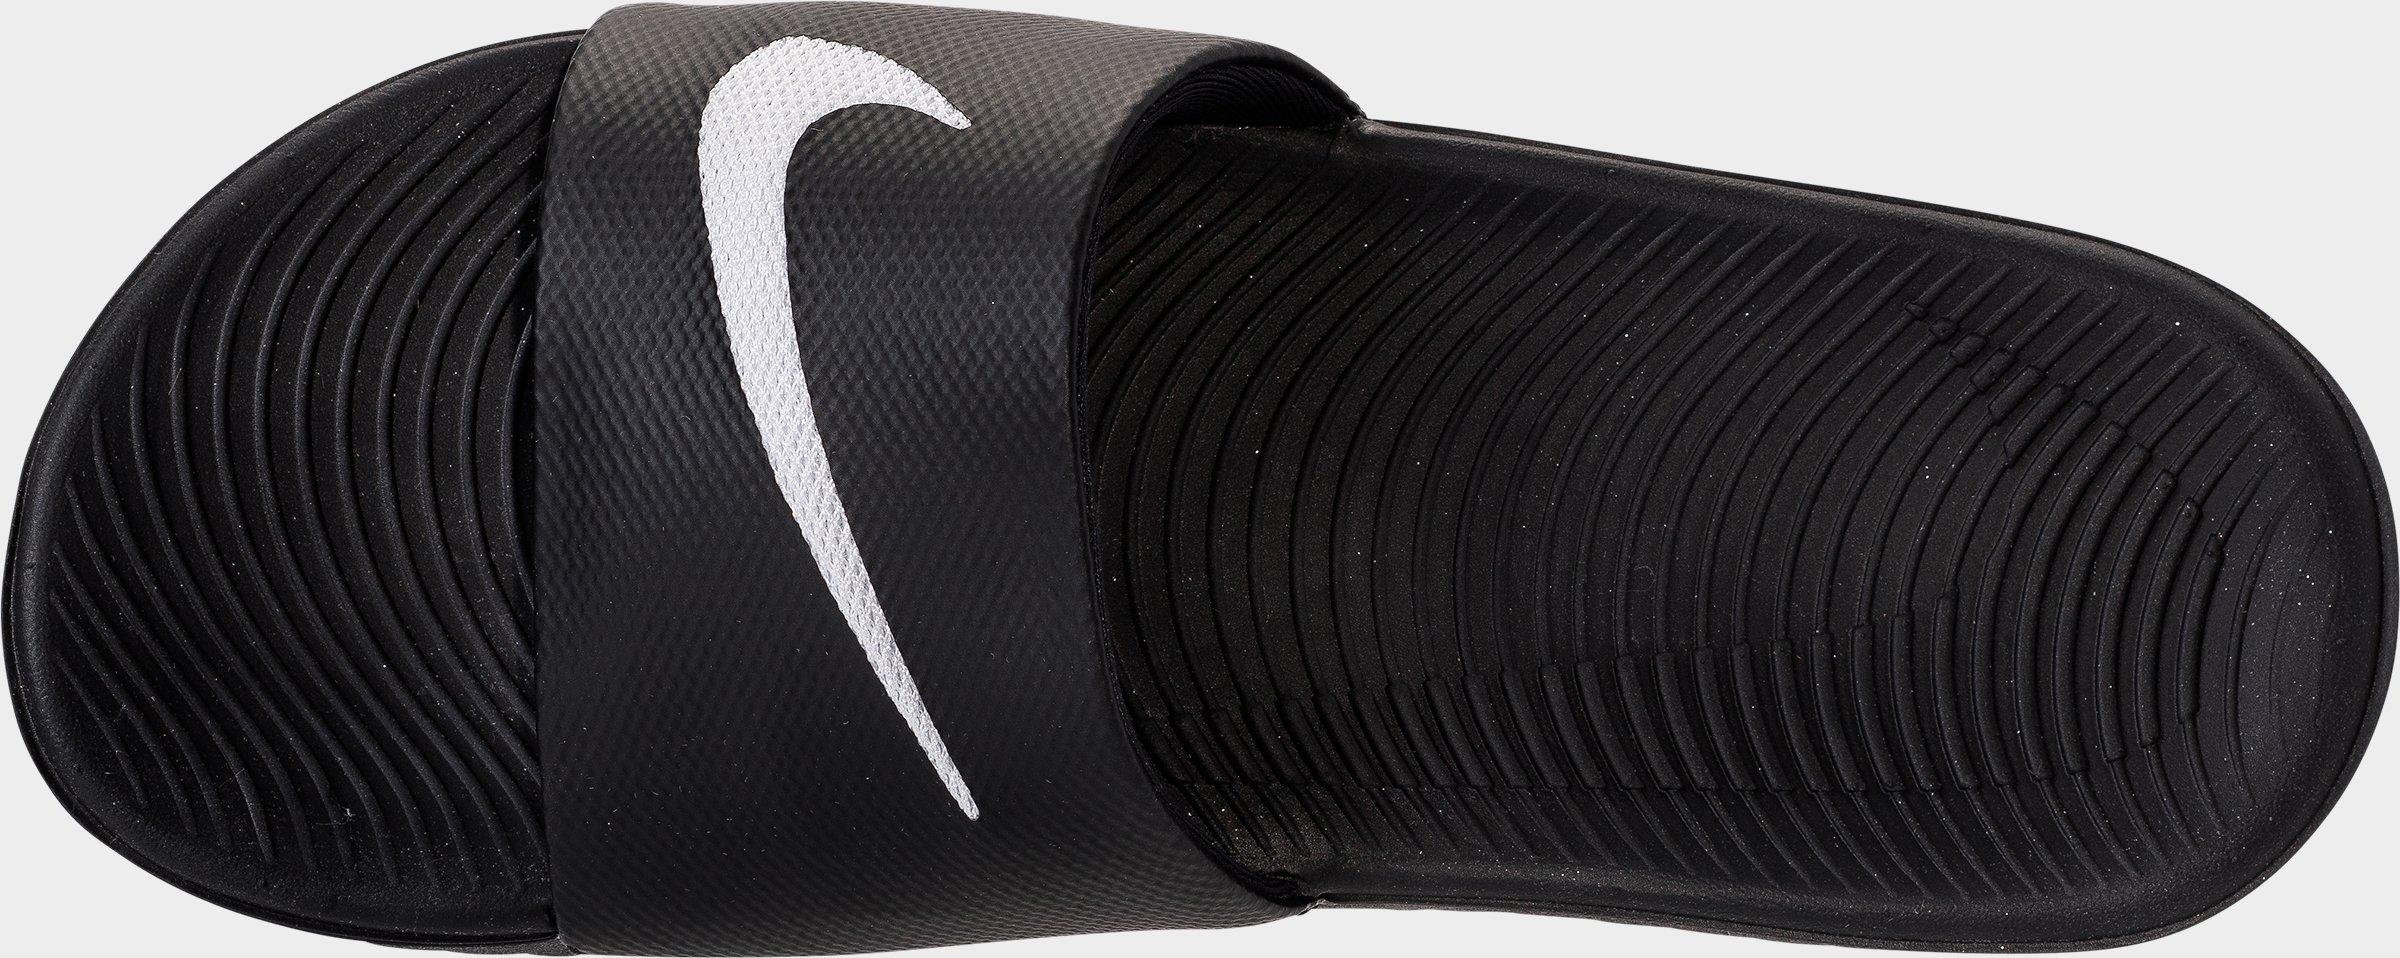 Kids' Nike Kawa Slide Sandals| JD Sports